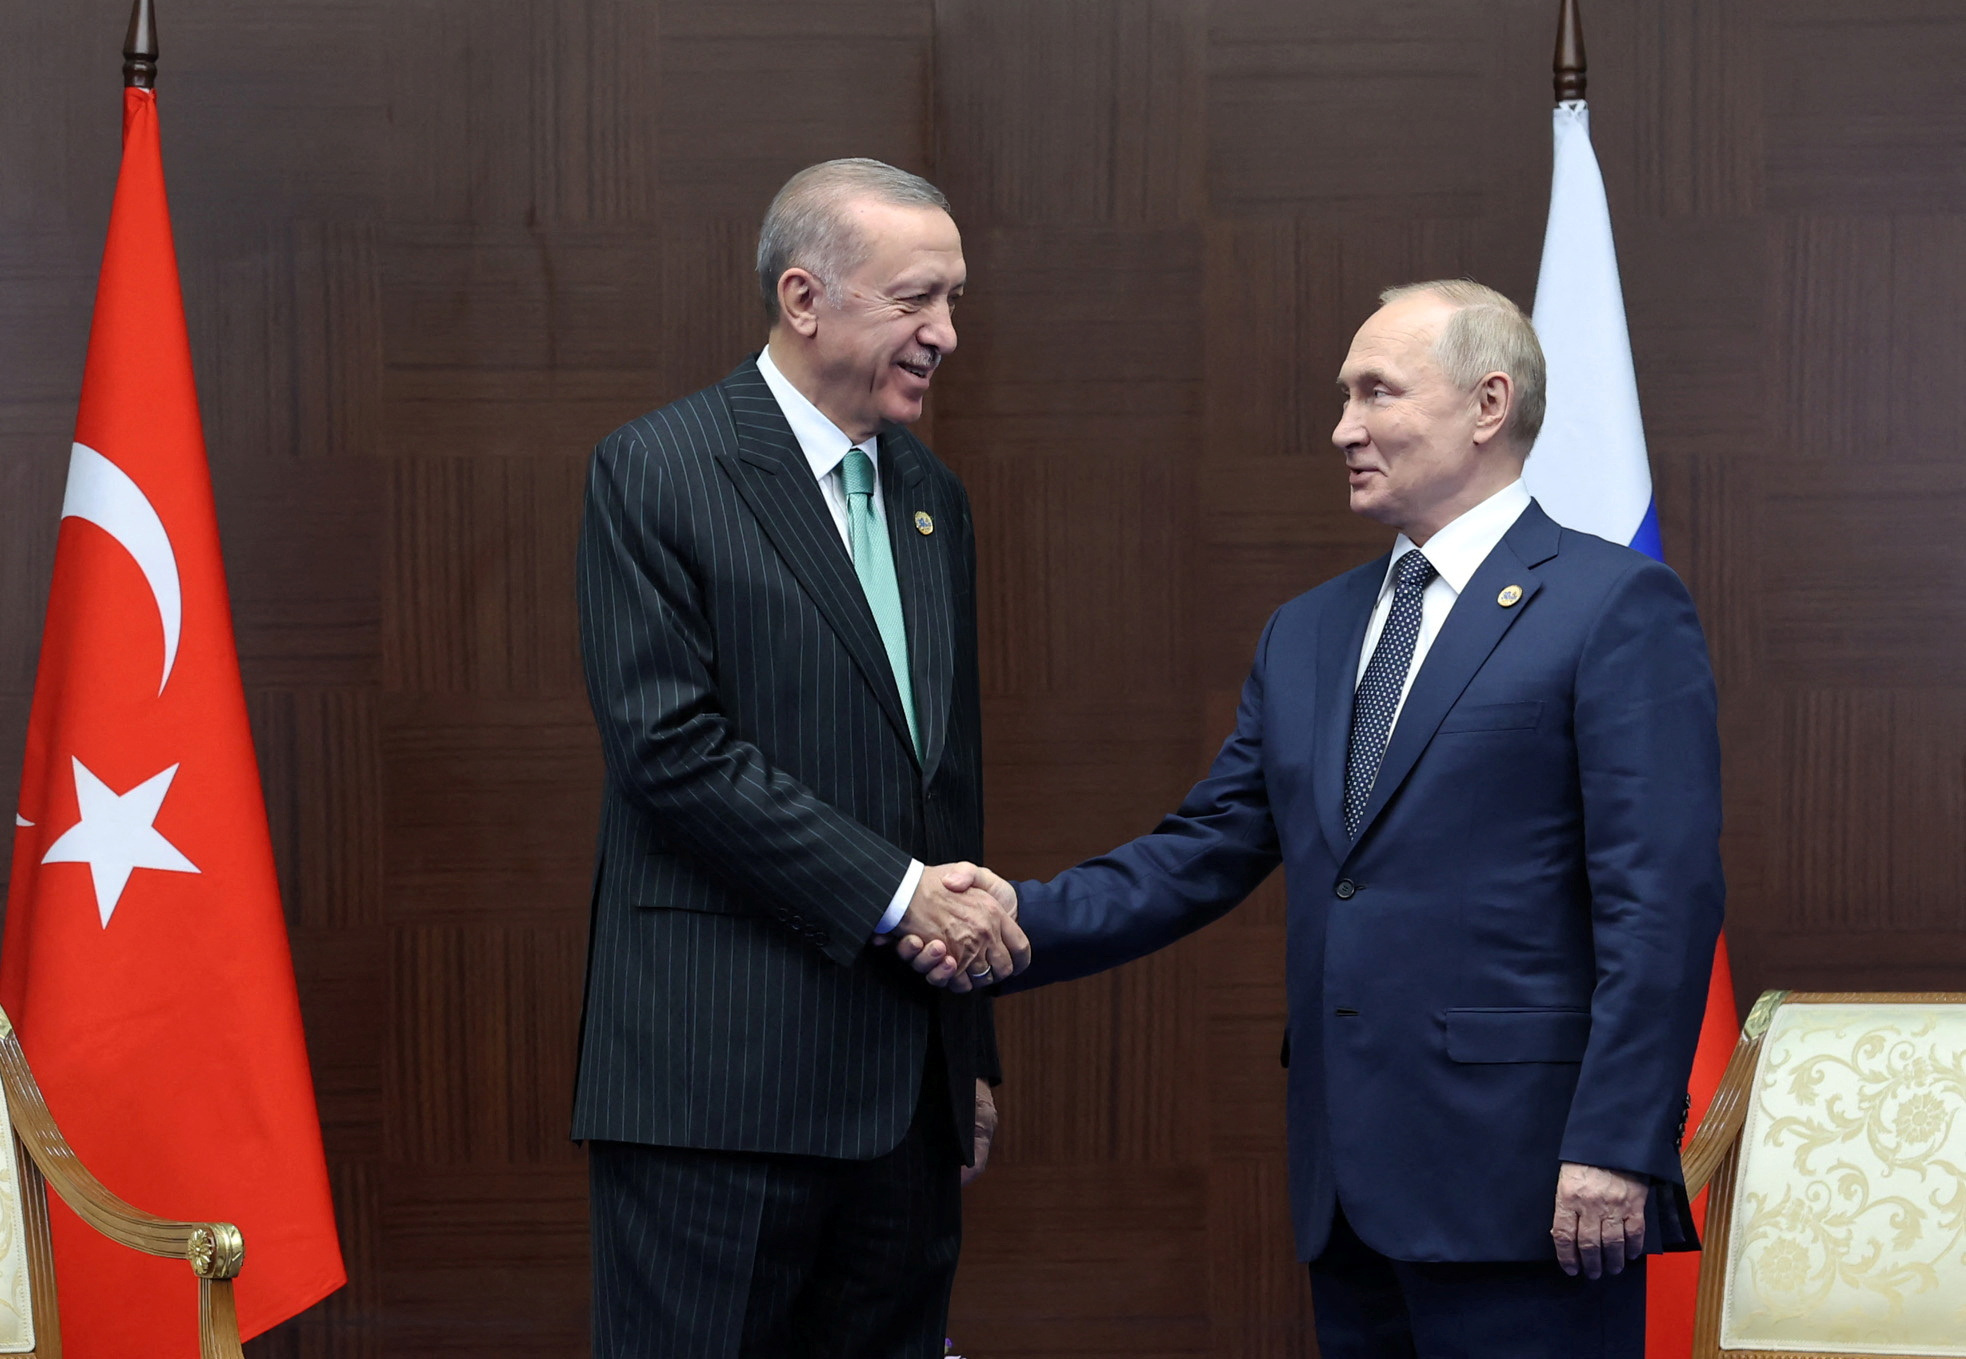 Ρωσία για Τουρκία μετά τη συνάντηση Ερντογάν - Ζελένσκι: Παραβίασε συμφωνίες